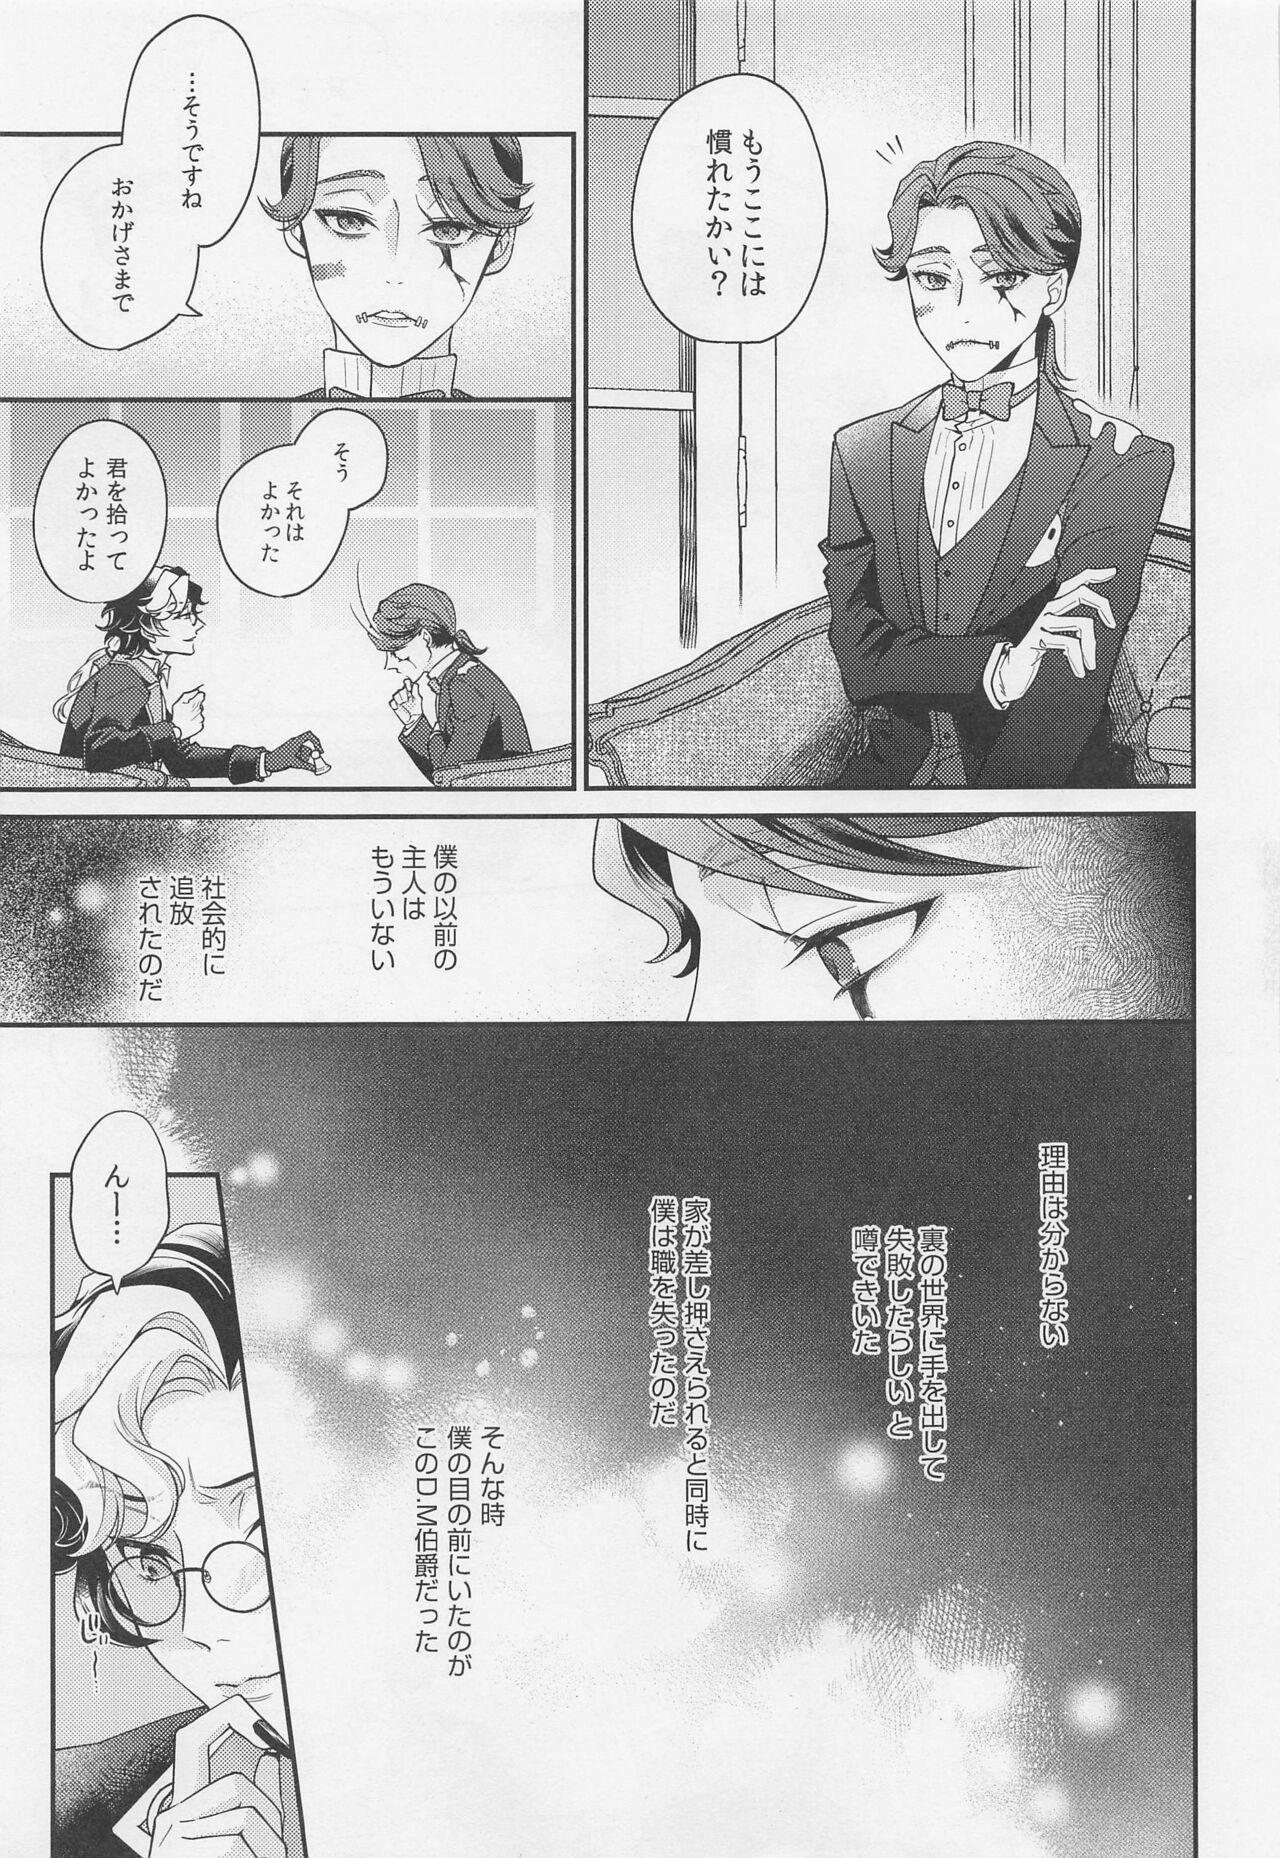 Ano tawamuretoyobunaraba - Identity v Off - Page 6